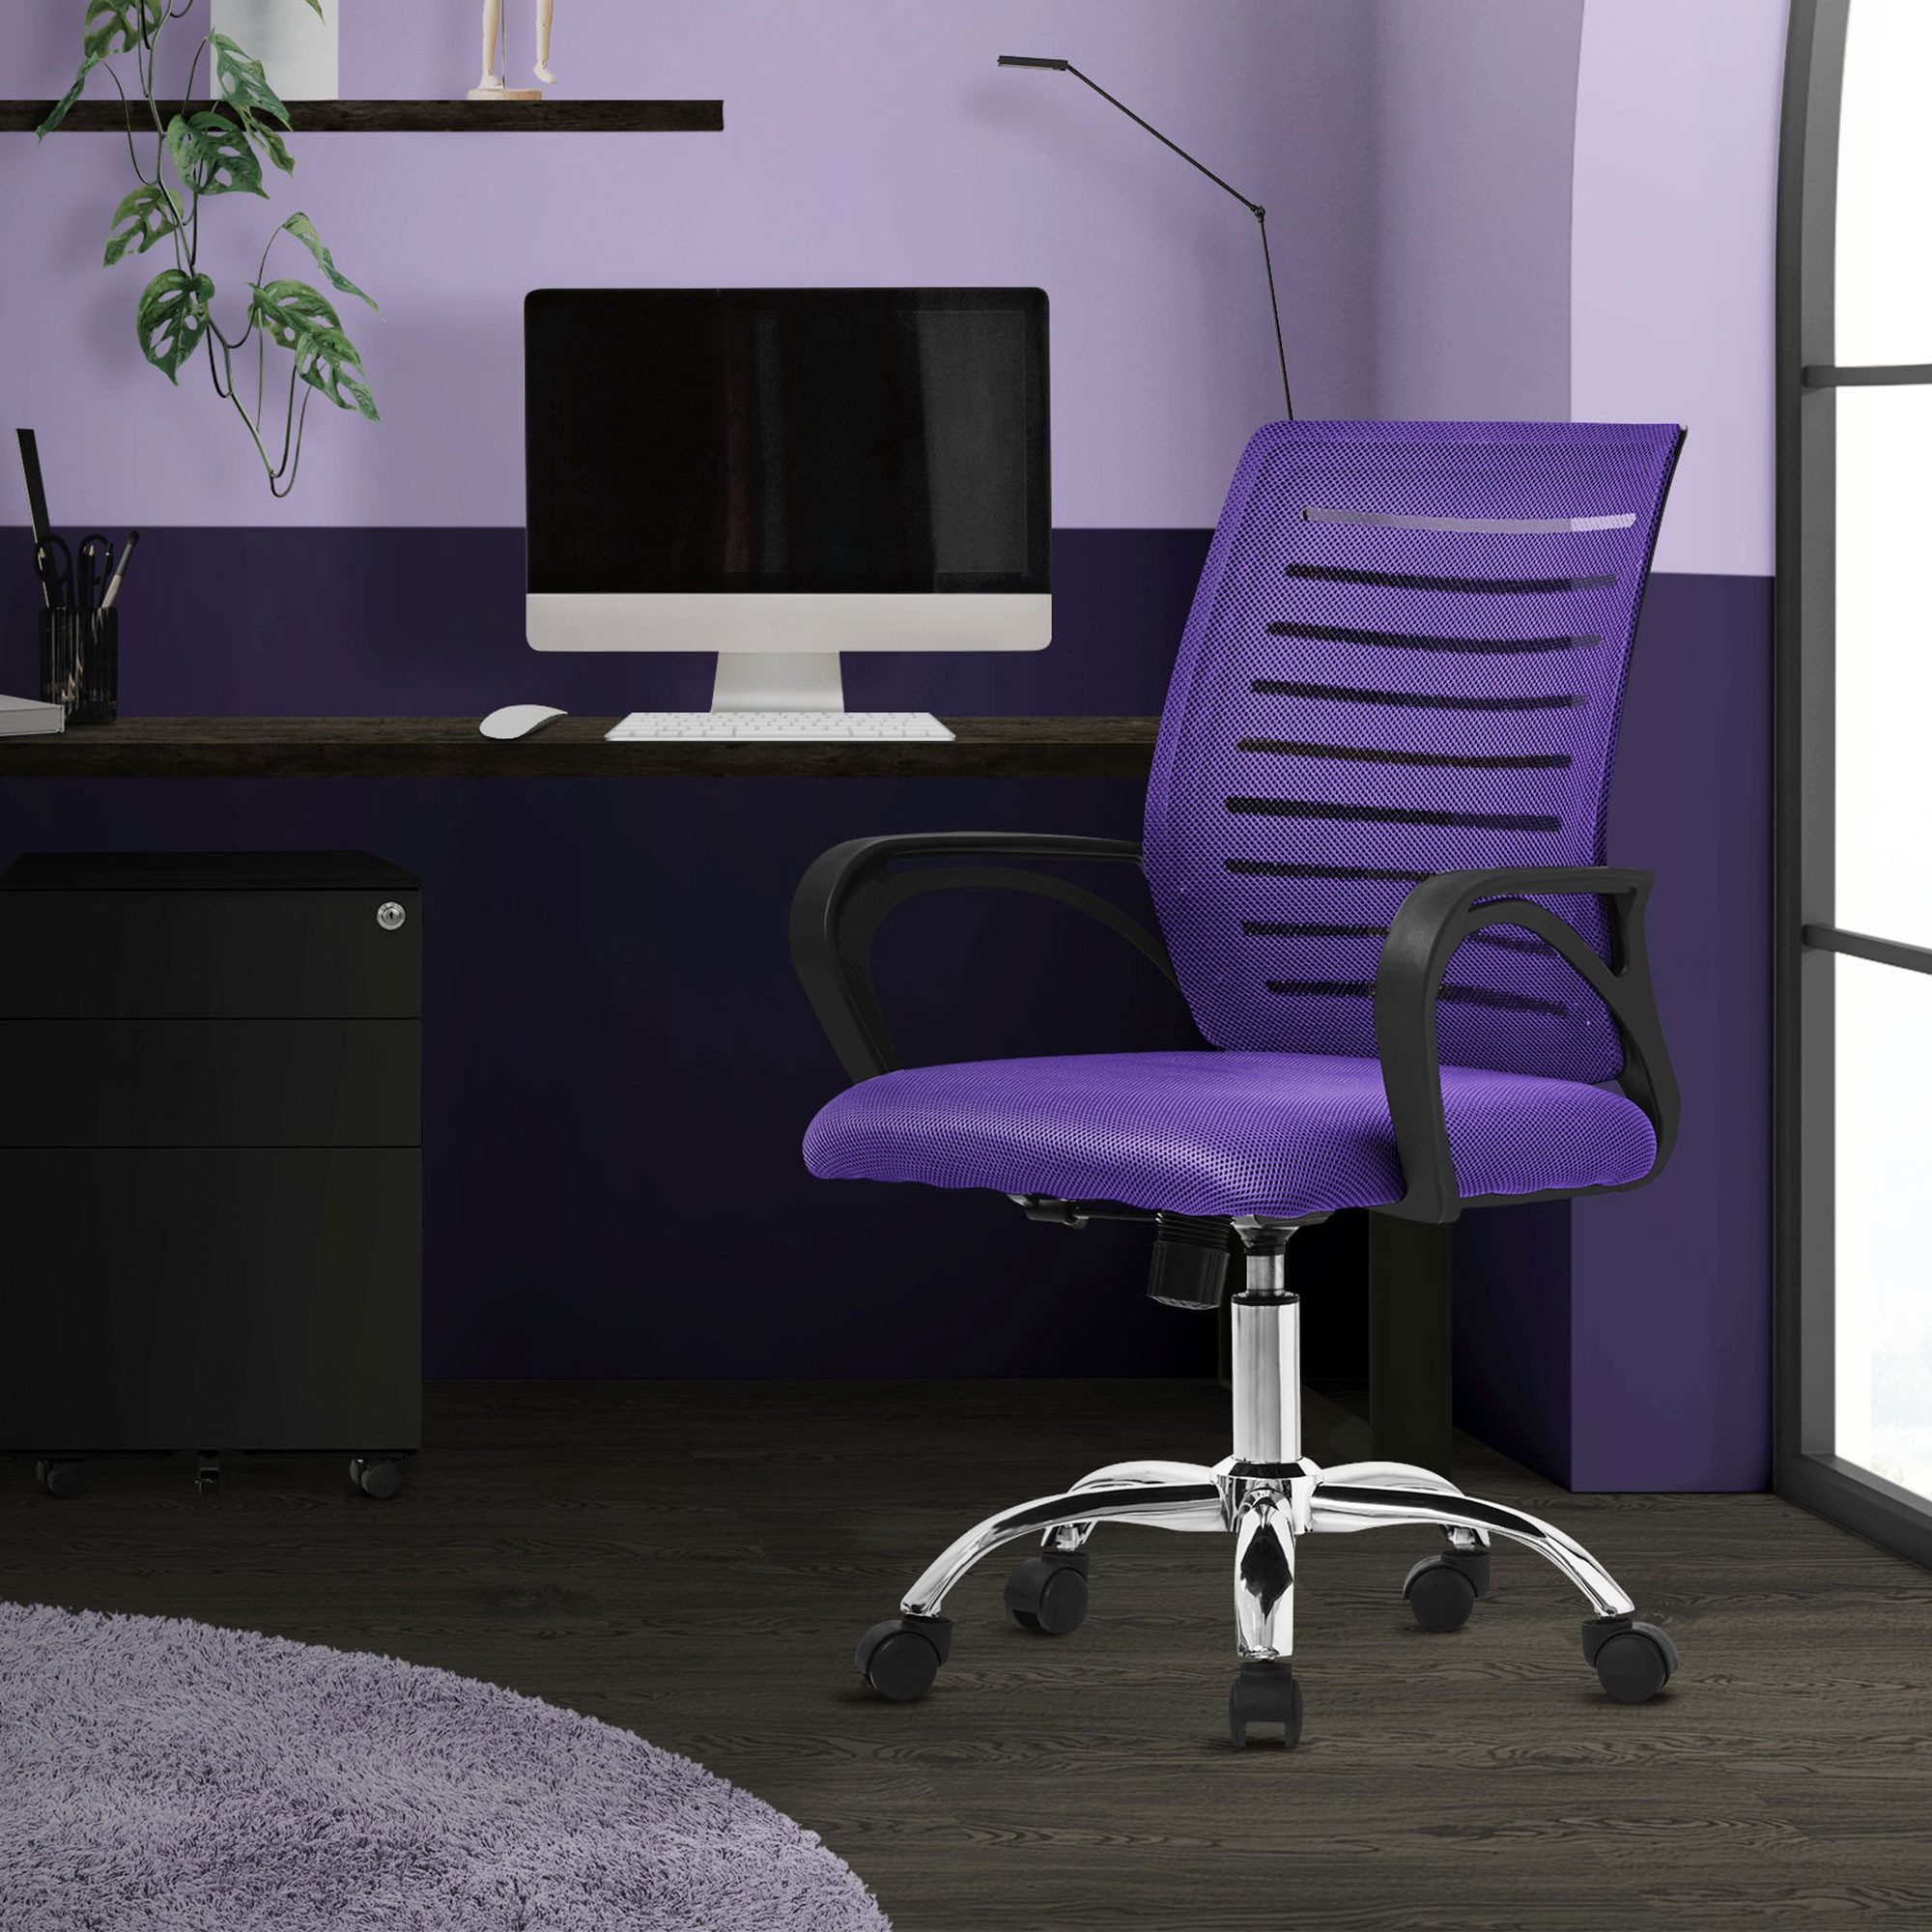 ML-DESIGN Bürostuhl Computerstuhl ergonomisch 360° Drehstuhl mit Rollen Stuhl, Gaming Stuhl Lila mit Armlehnen und Wippmechanismus 59x54x99cm